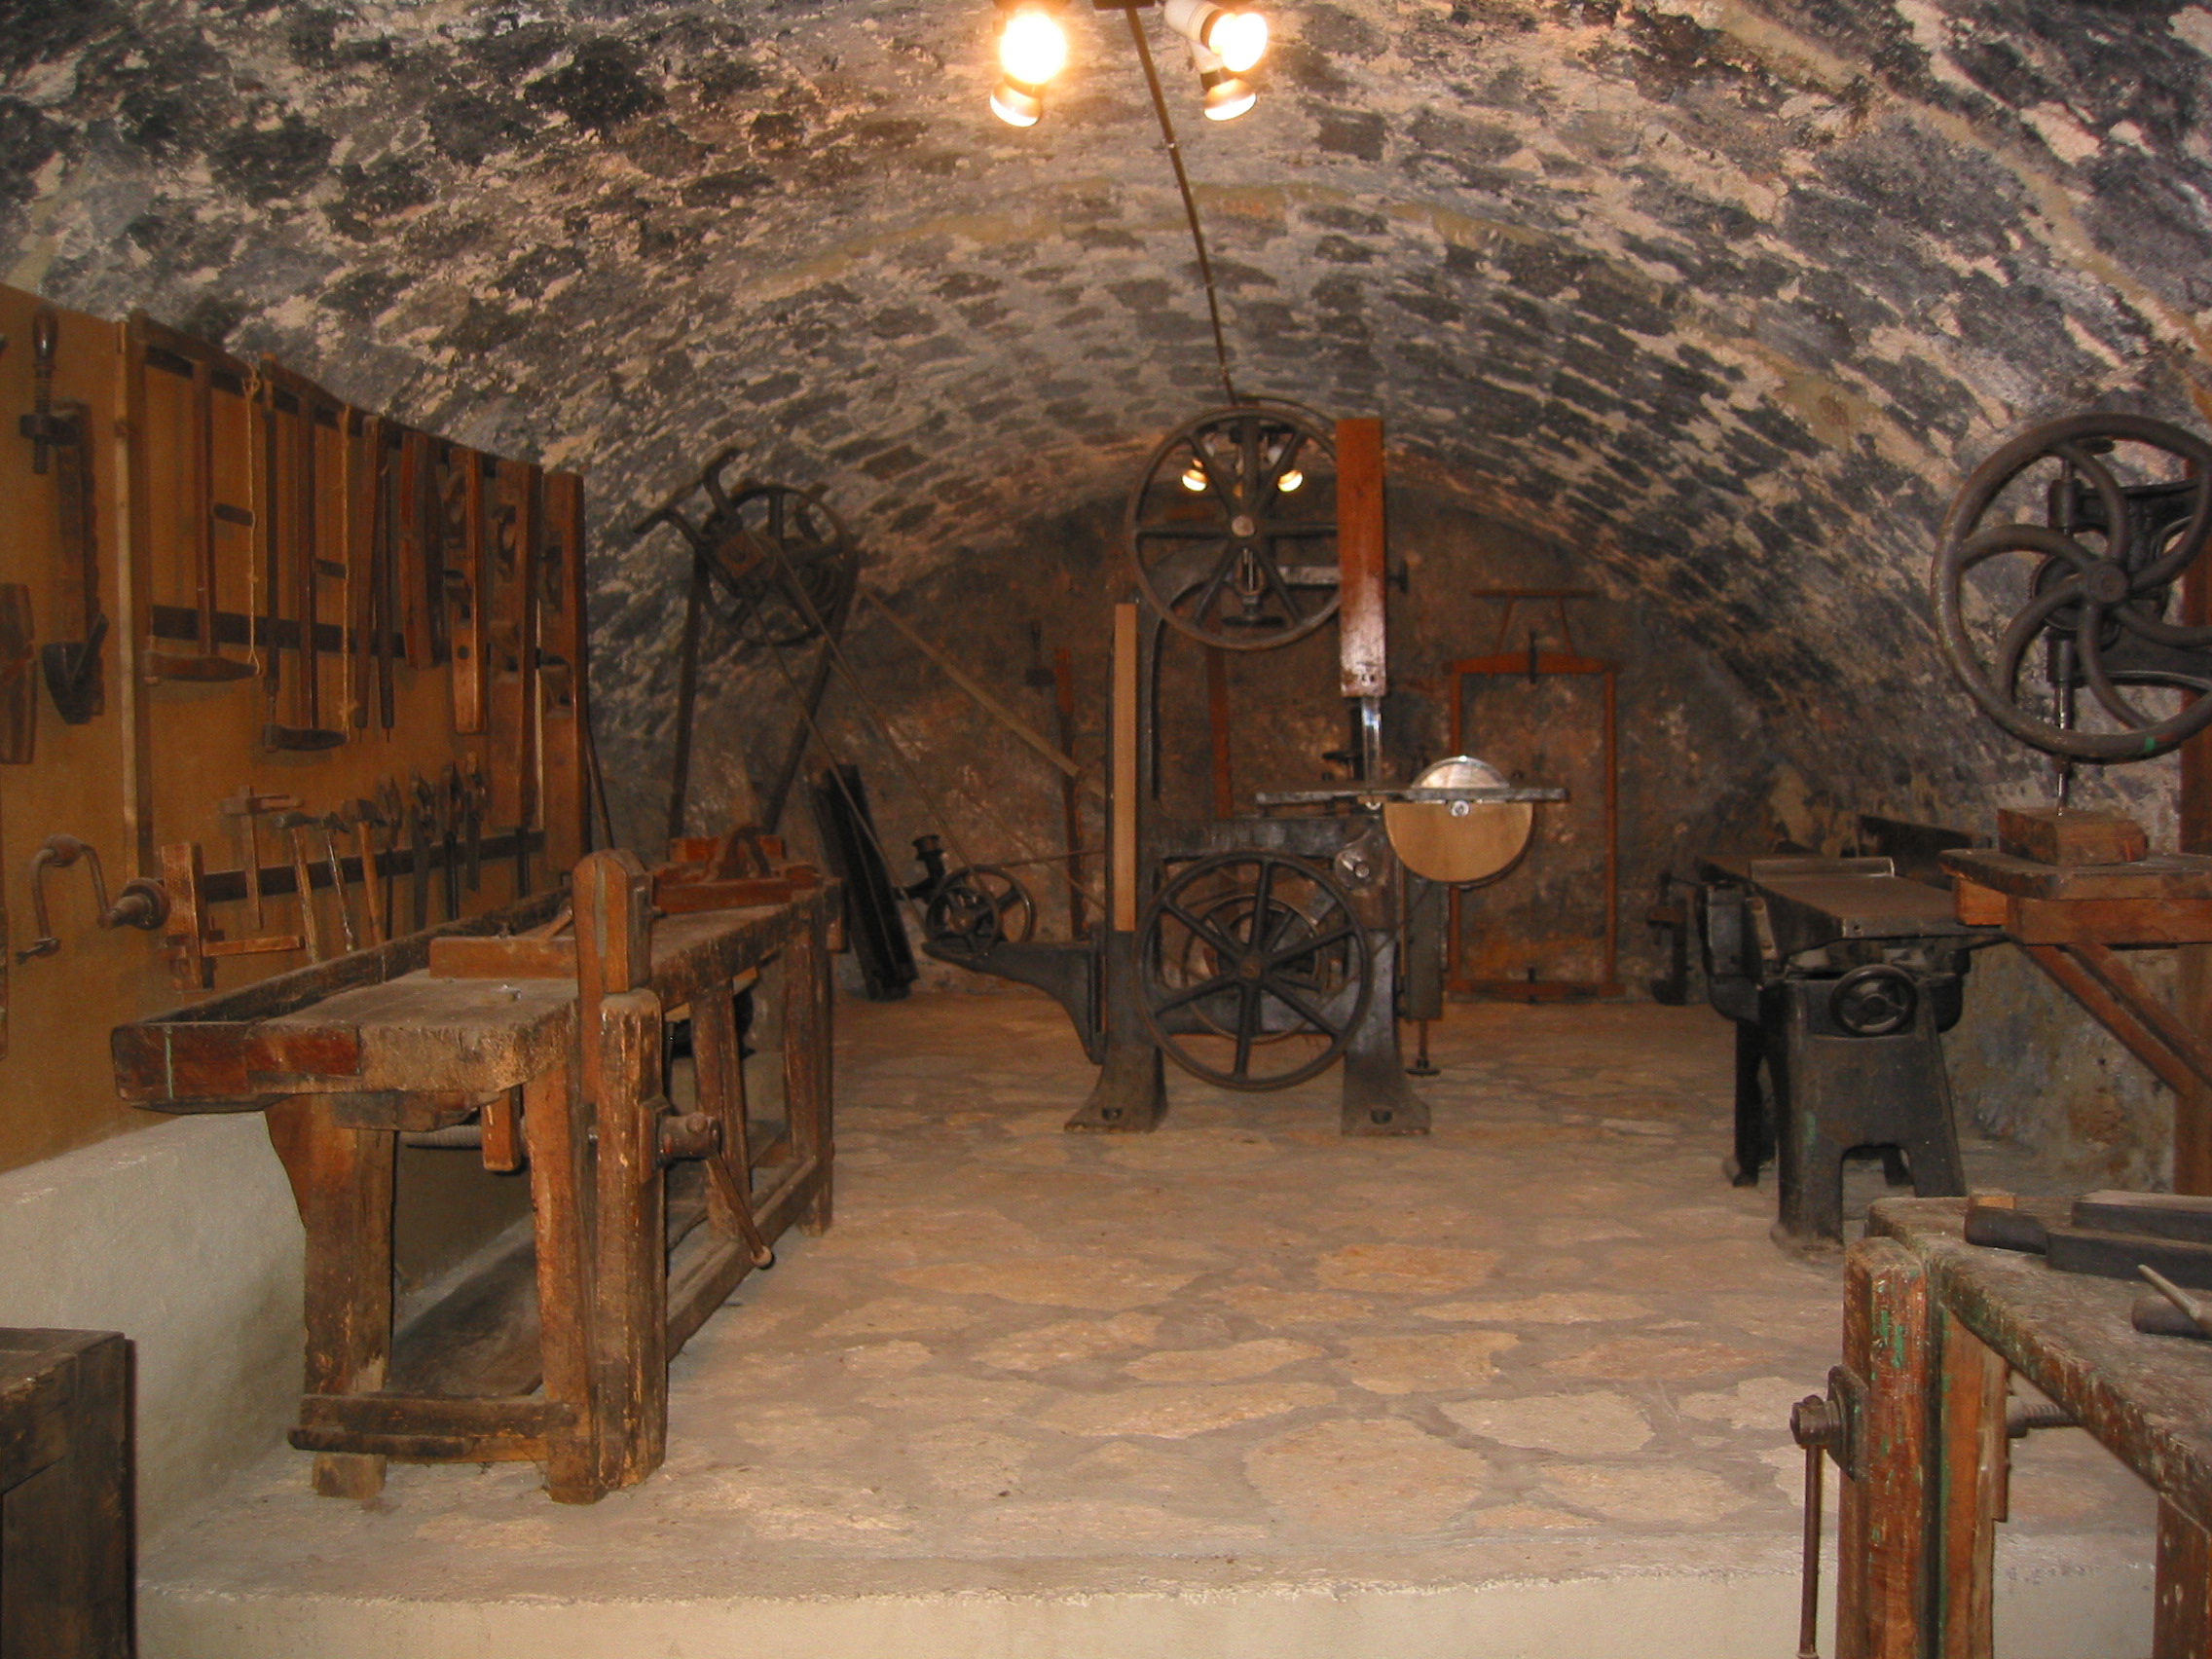 interno della grotta dove sono in esibizione vari oggetti per lavorare il legno